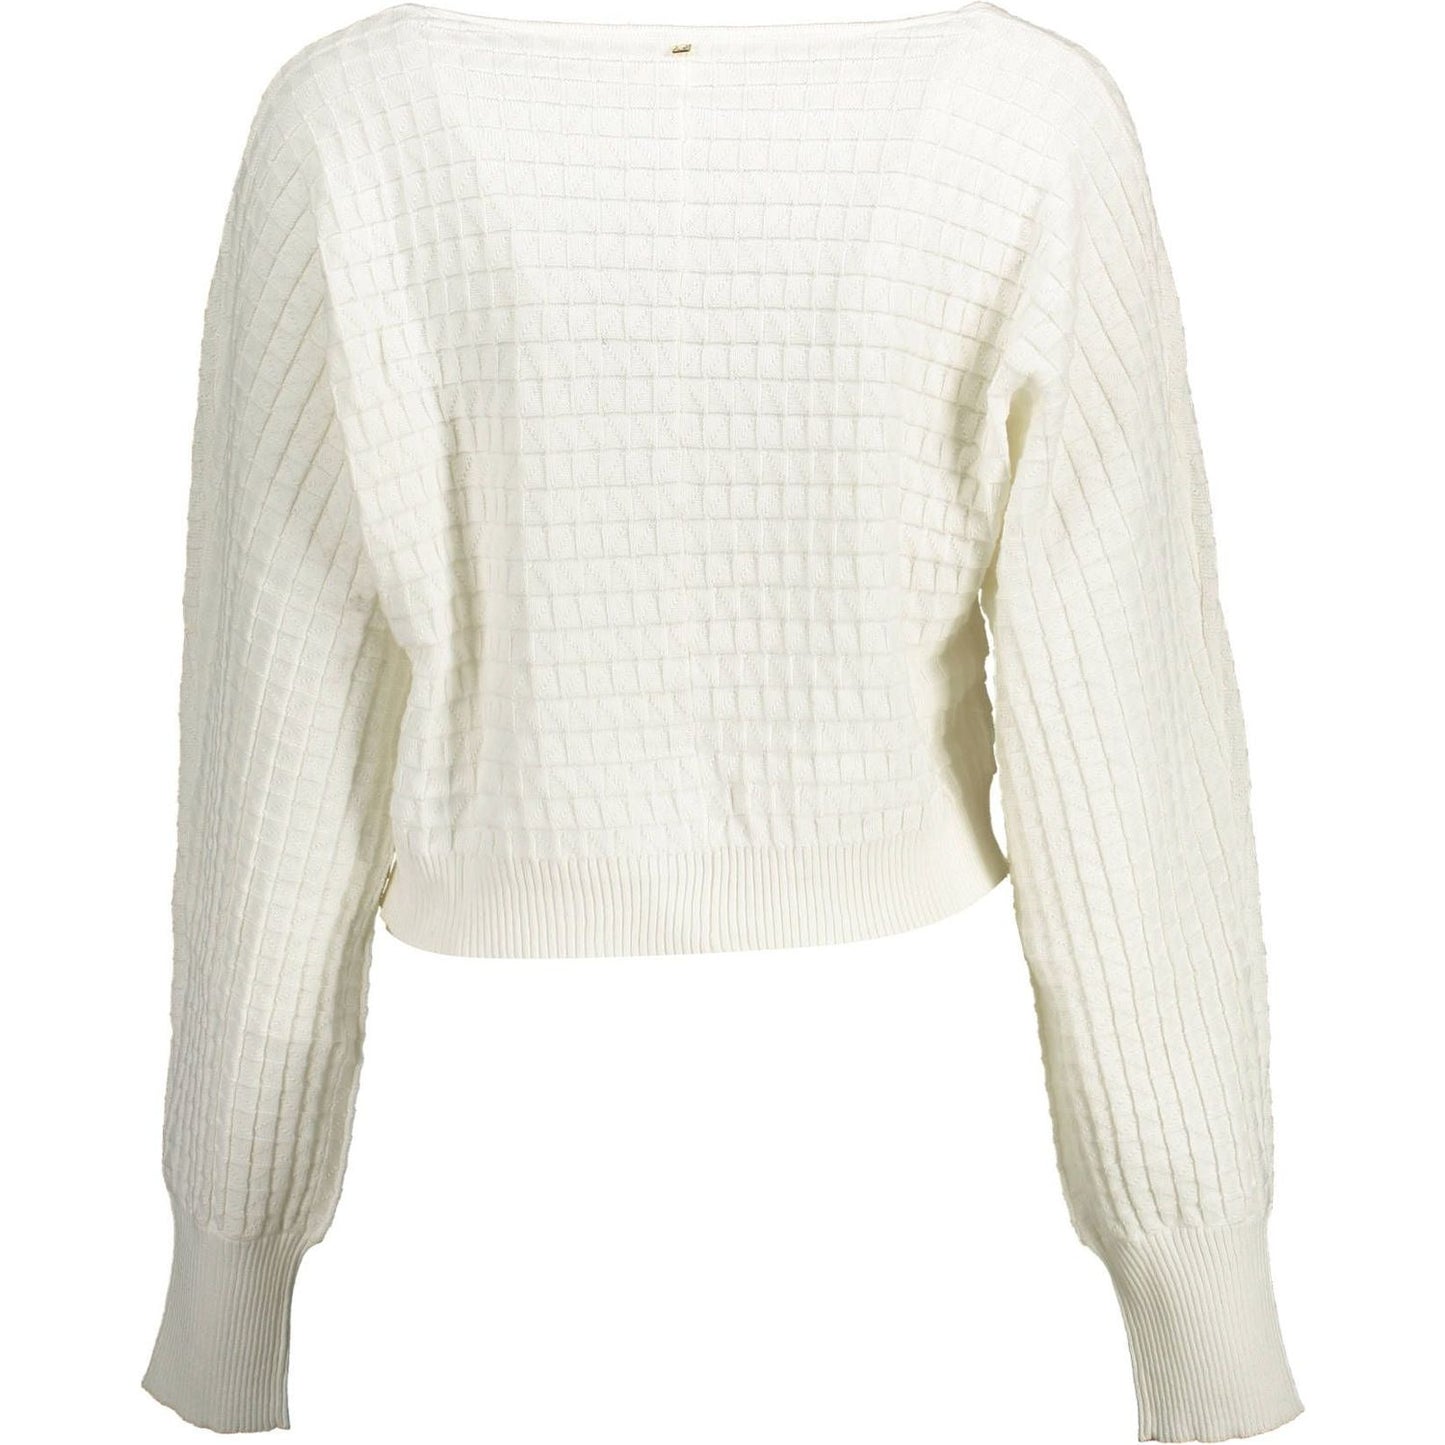 KoccaChic White Long-Sleeved V-Neck ShirtMcRichard Designer Brands£99.00